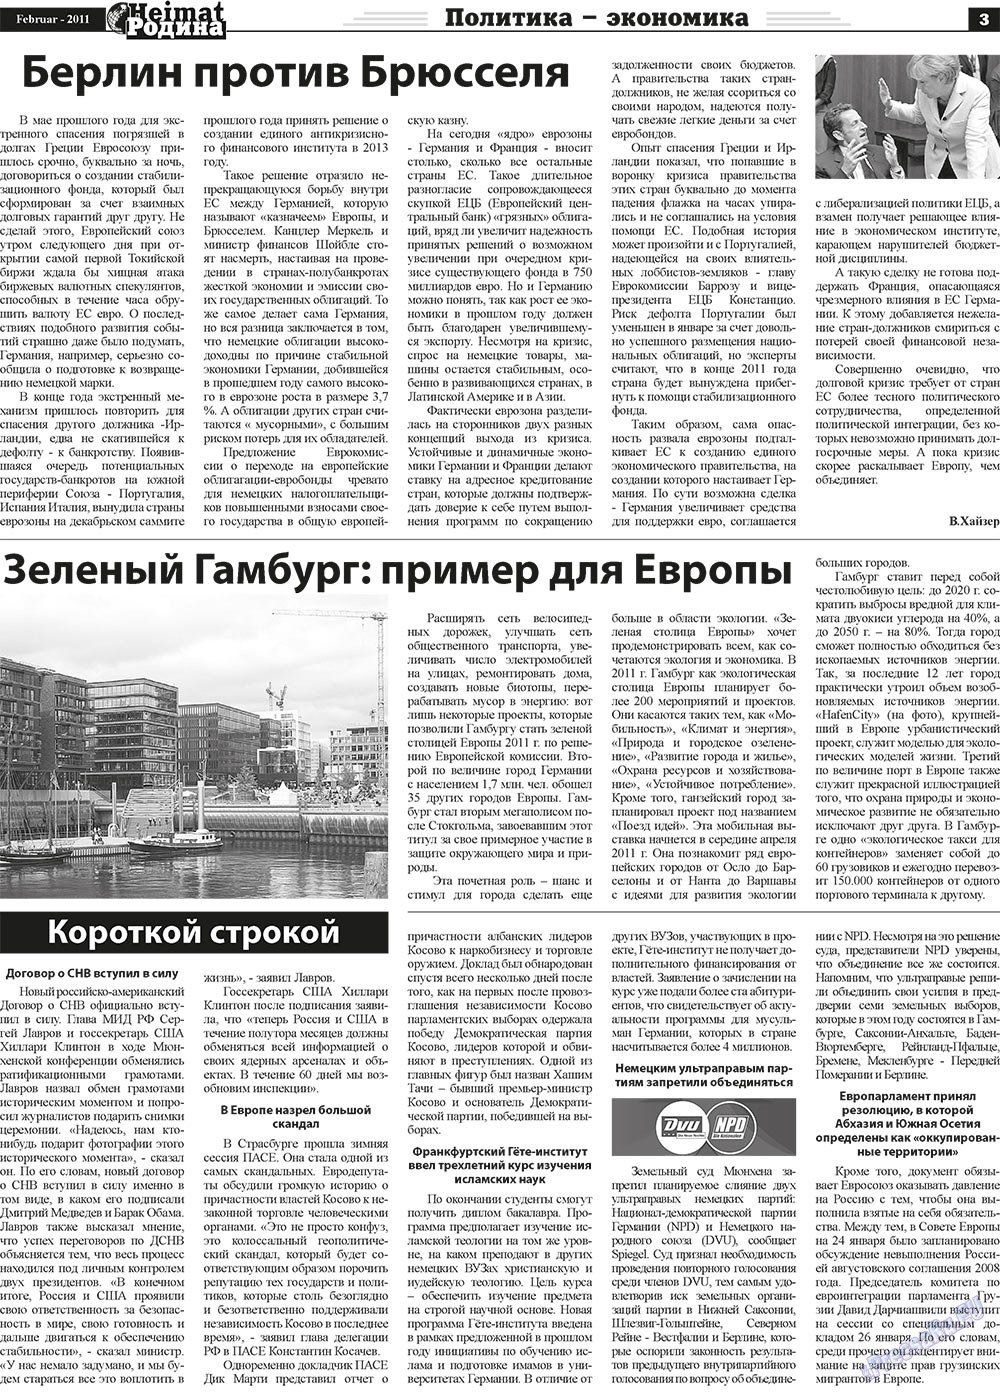 Heimat-Родина (Zeitung). 2011 Jahr, Ausgabe 2, Seite 3